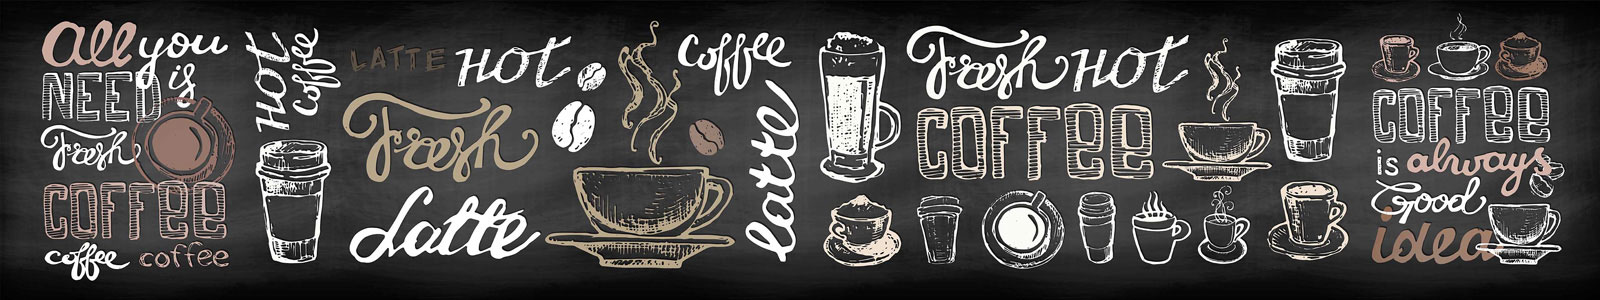 №5813 - Надписи и рисунки о кофе